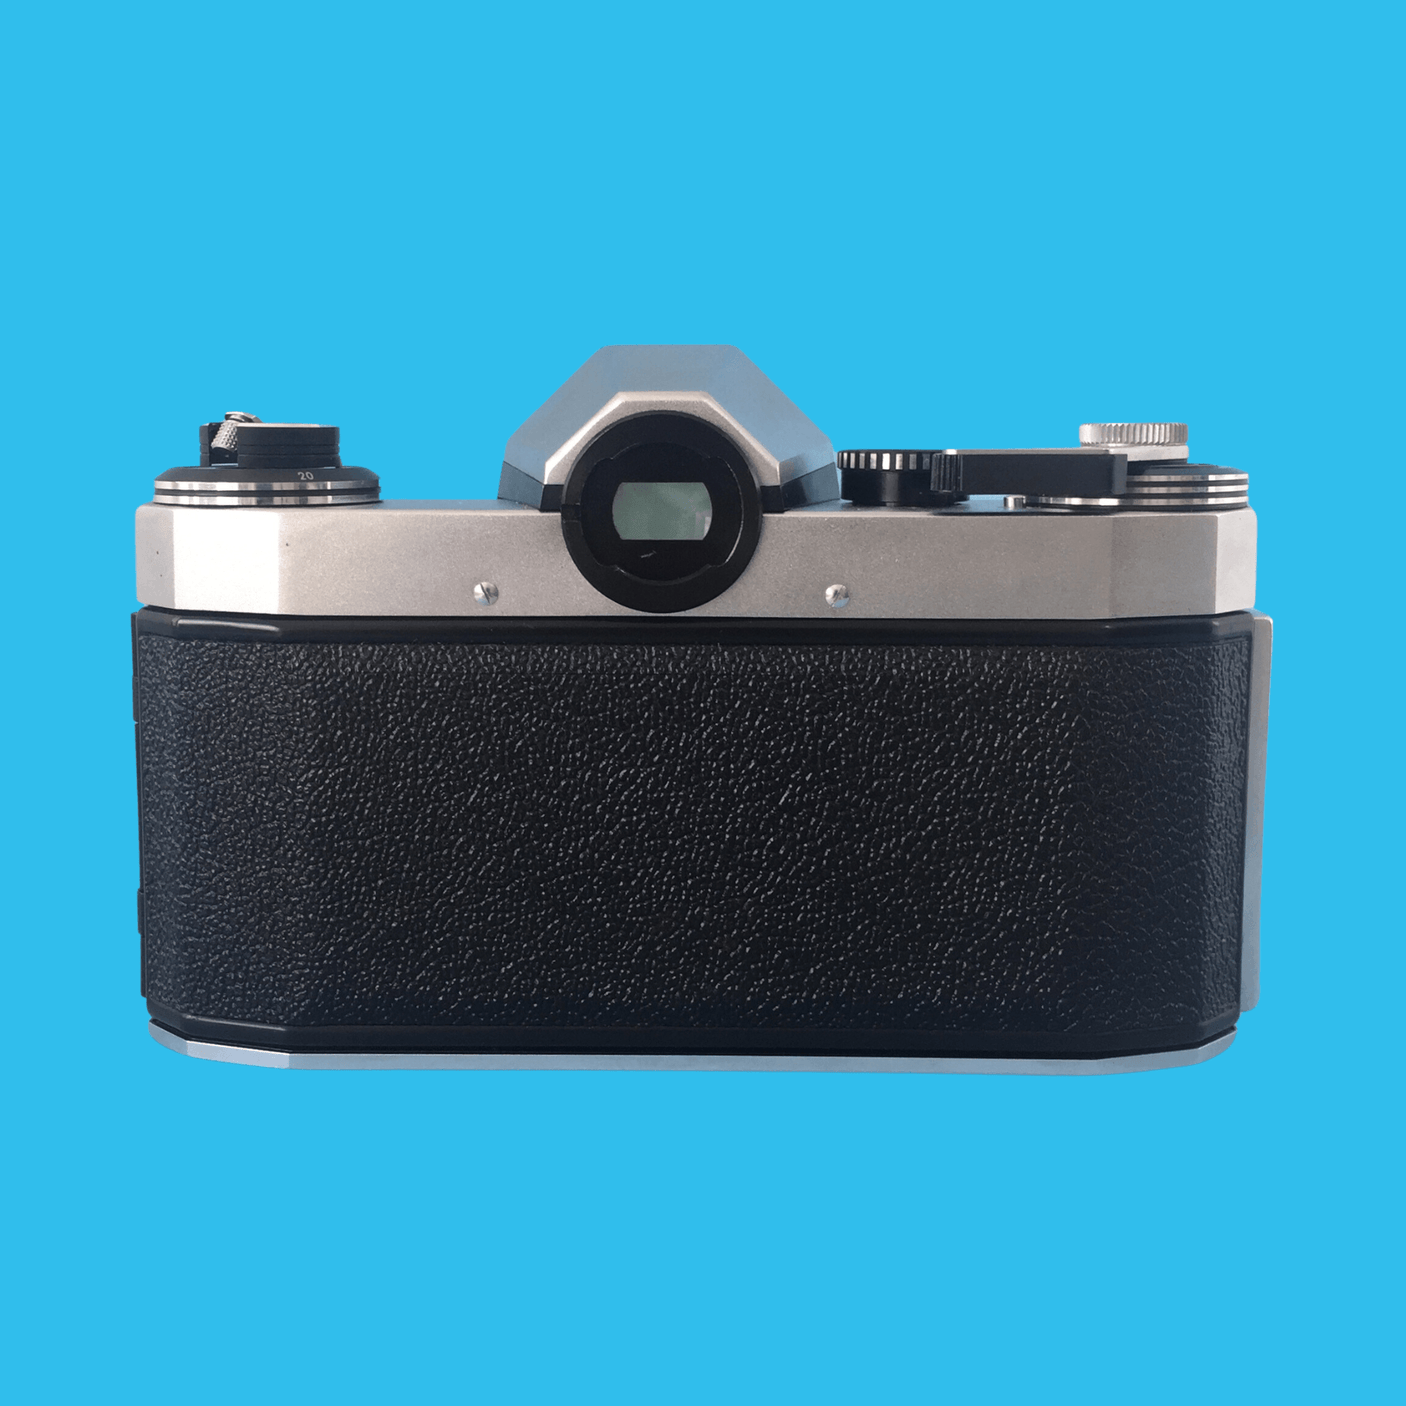 Vintage 35mm SLR Film Camera Praktica PL Nova 1 with Carl Zesis f/2.8 50mm Lens